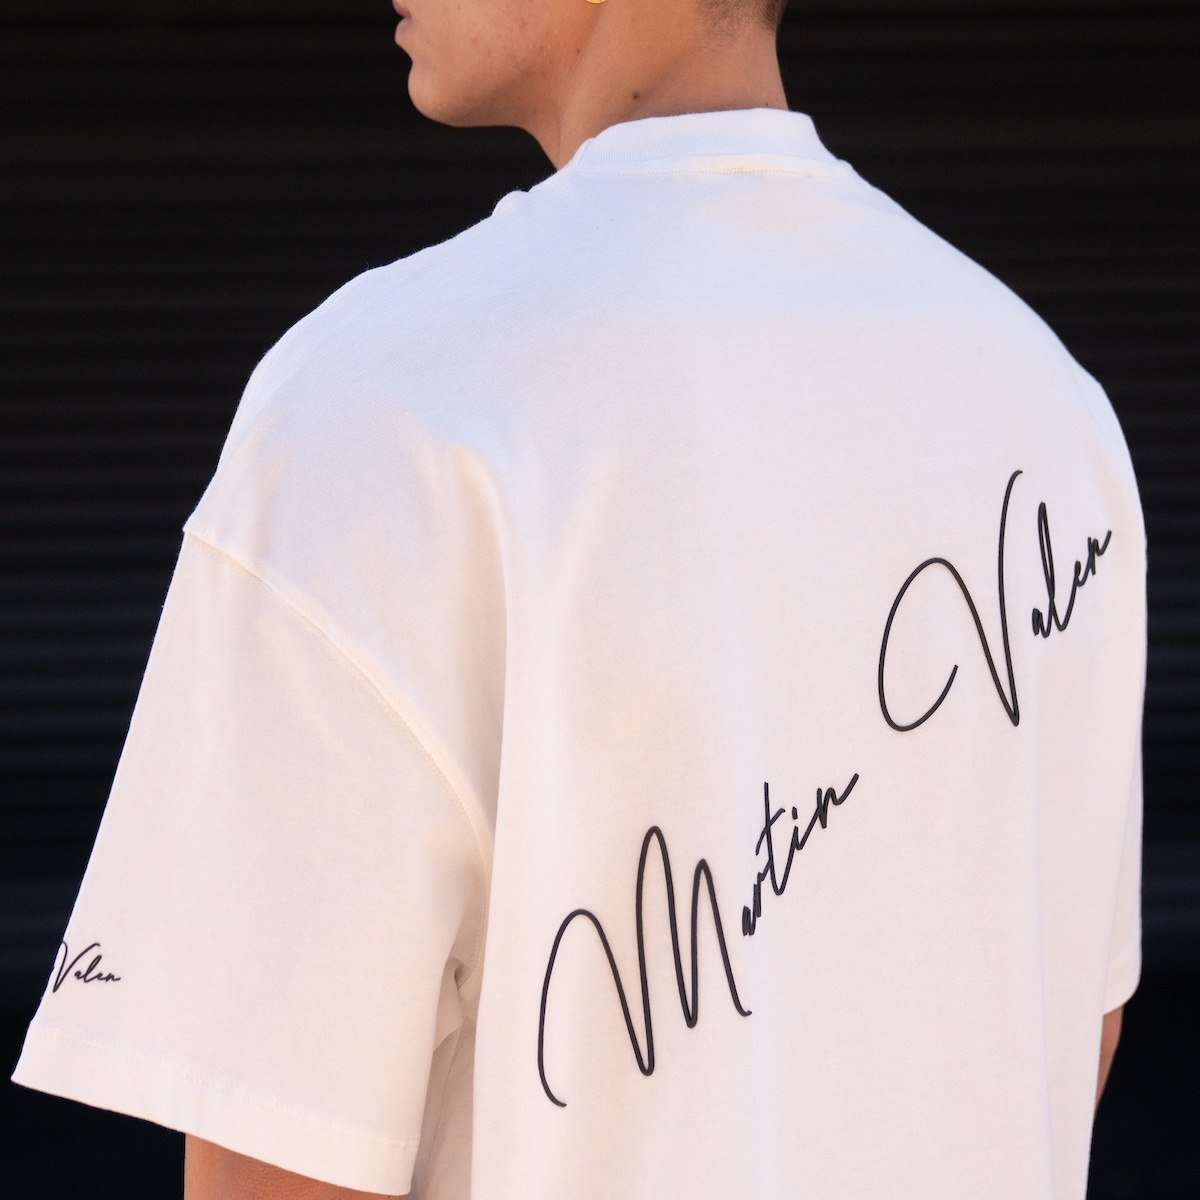 Camiseta extragrande blanca con estampado 3D de mangas, pecho y espalda de Martin Valen para hombre